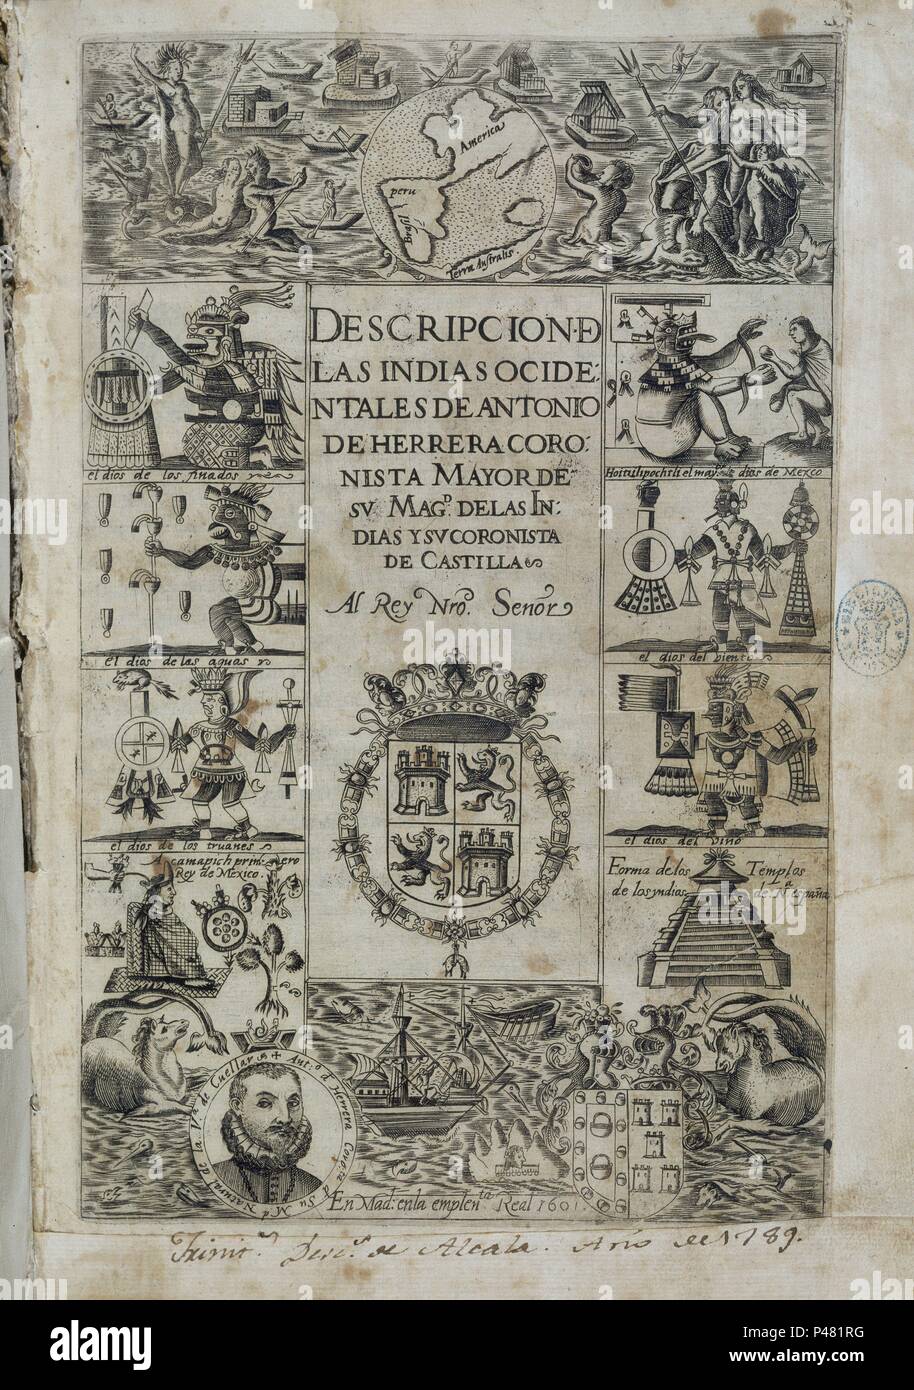 DESCRIPCION DE LAS INDIAS OCIDENTALES - PORTADA. Autor: Antonio Herrera y Rueda (1549-1625). Lage: Biblioteca Nacional - COLECCION, MADRID, SPANIEN. Stockfoto